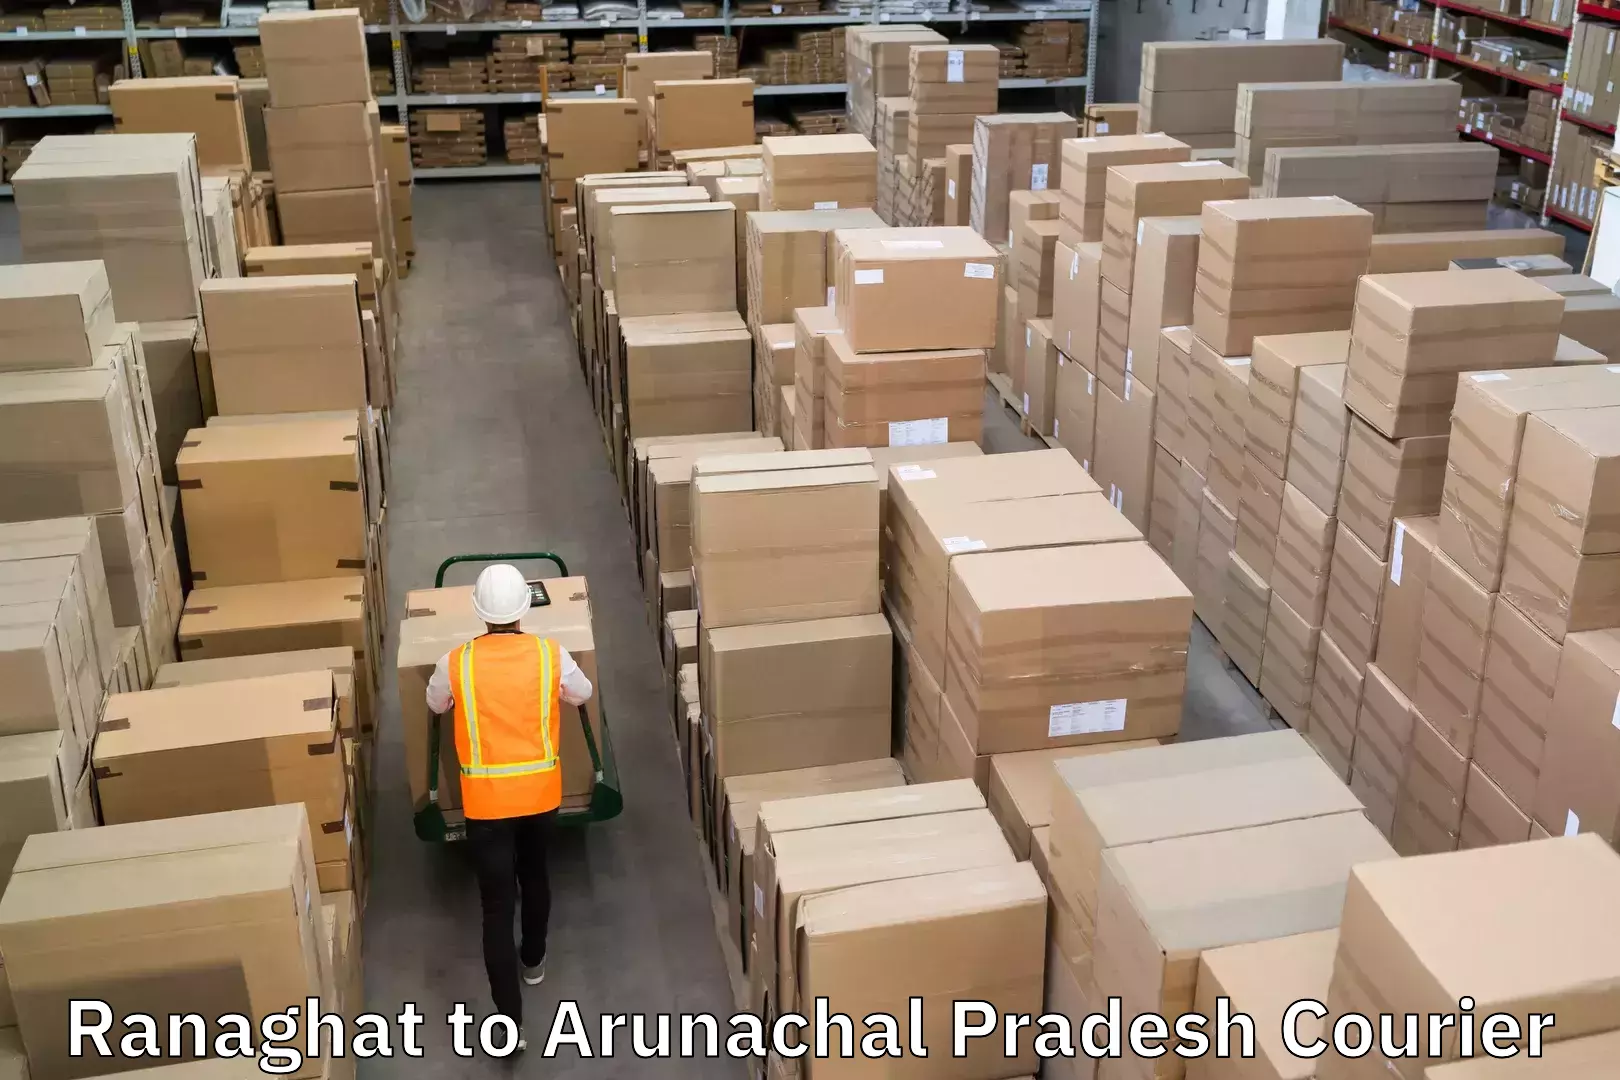 Premium delivery services Ranaghat to Arunachal Pradesh